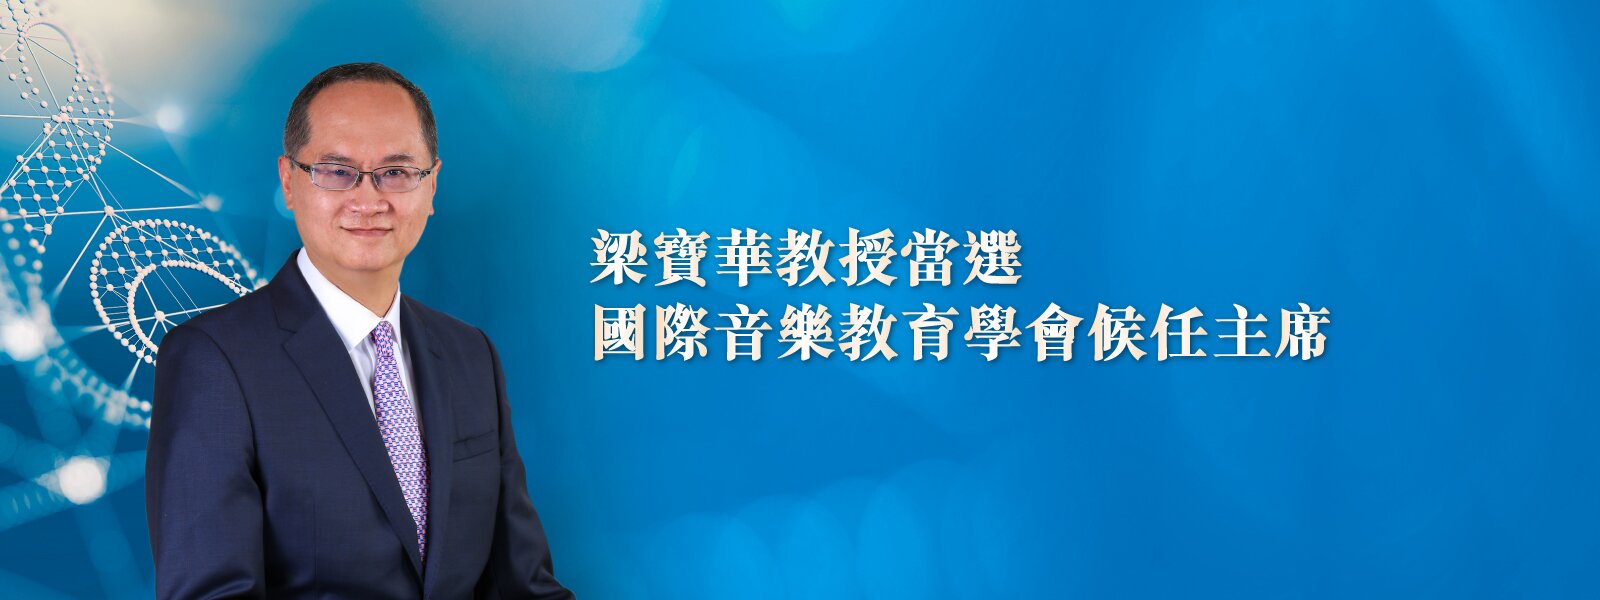 梁宝华教授当选国际音乐教育学会候任主席